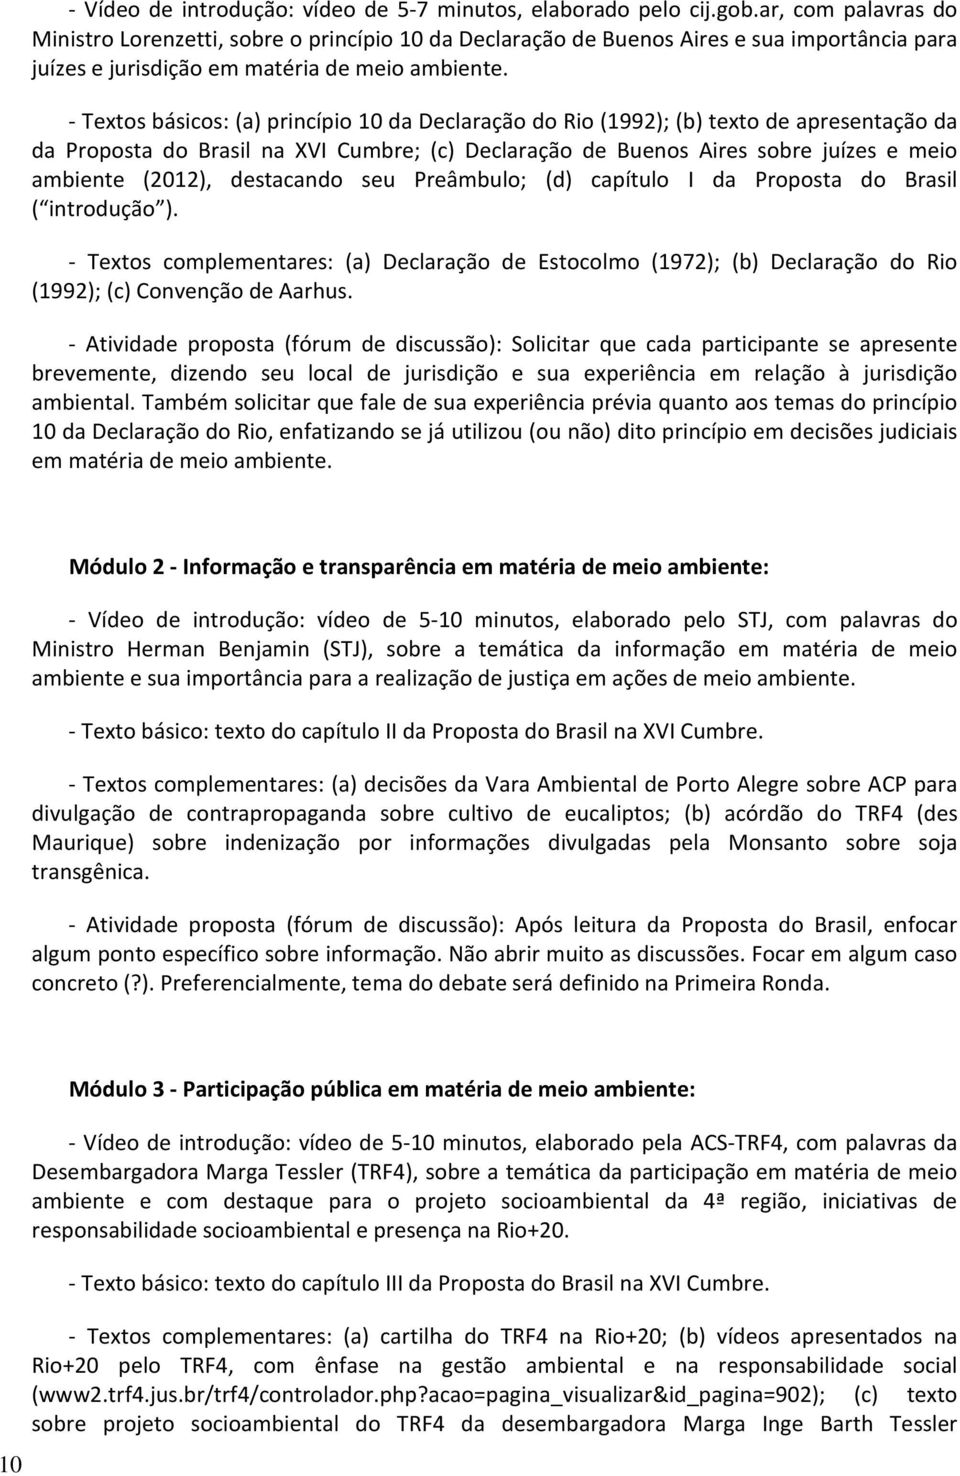 - Textos básicos: (a) princípio 10 da Declaração do Rio (1992); (b) texto de apresentação da da Proposta do Brasil na XVI Cumbre; (c) Declaração de Buenos Aires sobre juízes e meio ambiente (2012),